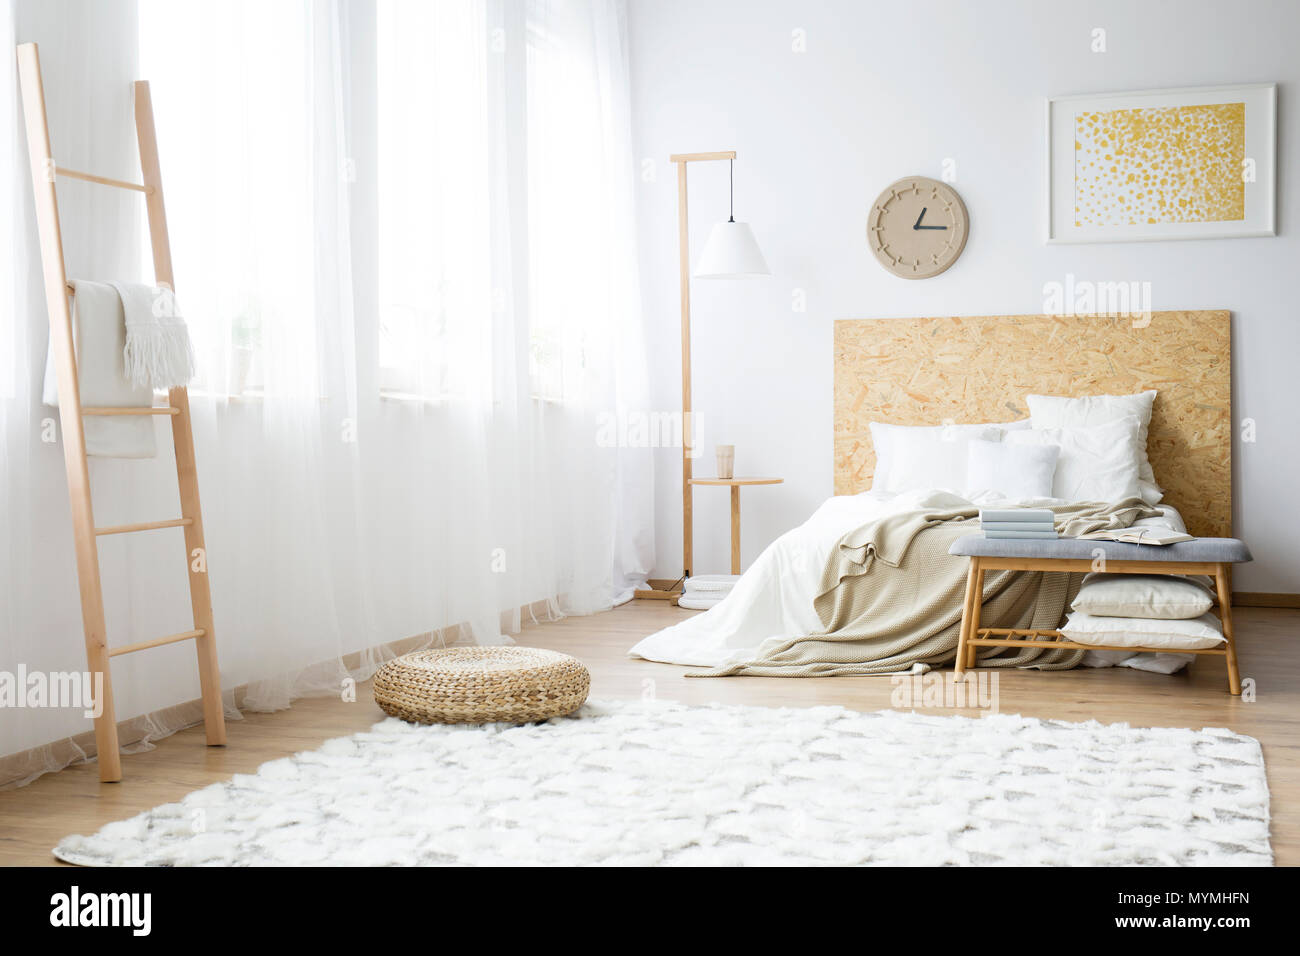 Reloj moderno colgando sobre una cama doble con almohadas rellenas de una blanca interior del dormitorio Foto de stock